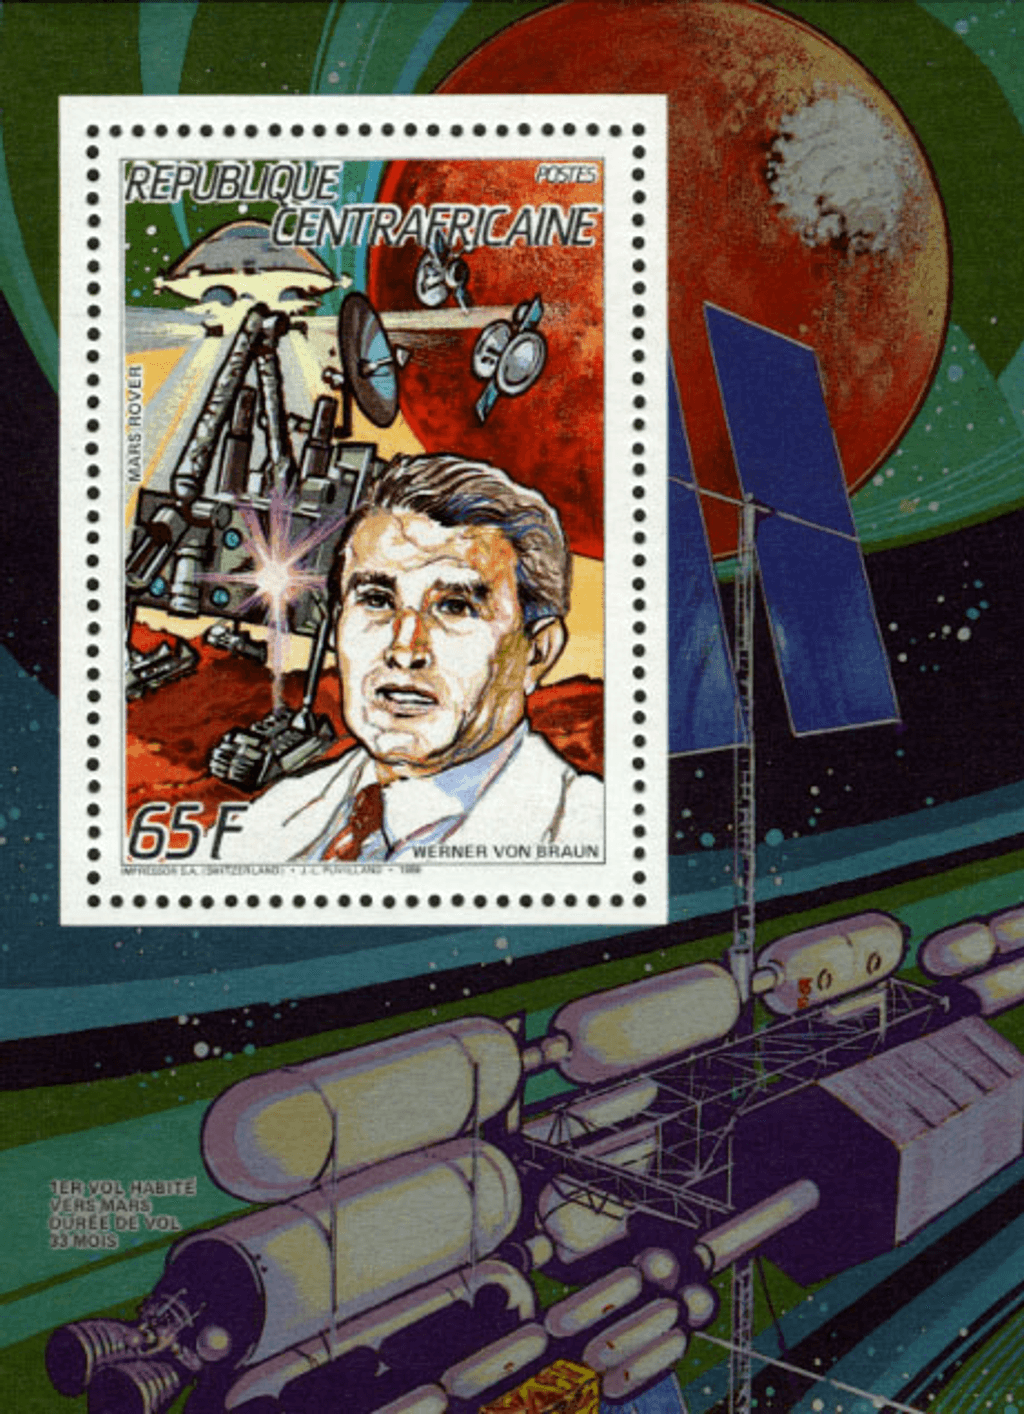 Space Travel 1987  (Herschel-Braun-Hanel-Baudry-Keller-Ockels-Merbold)